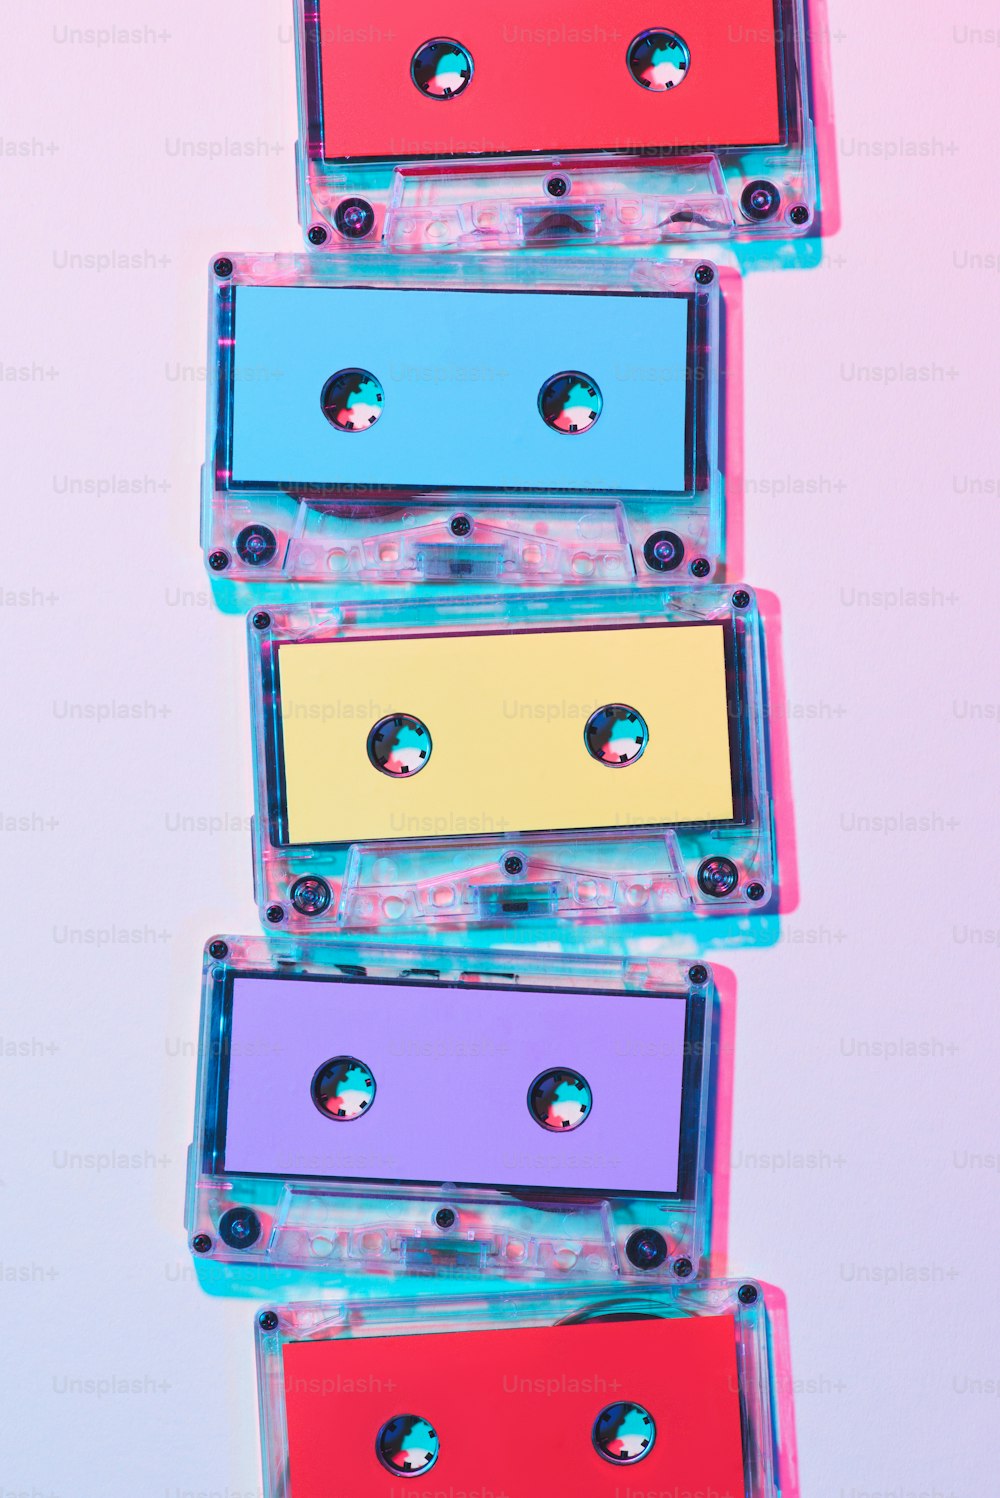 Vue de dessus de cassettes audio colorées arrangées sur fond violet